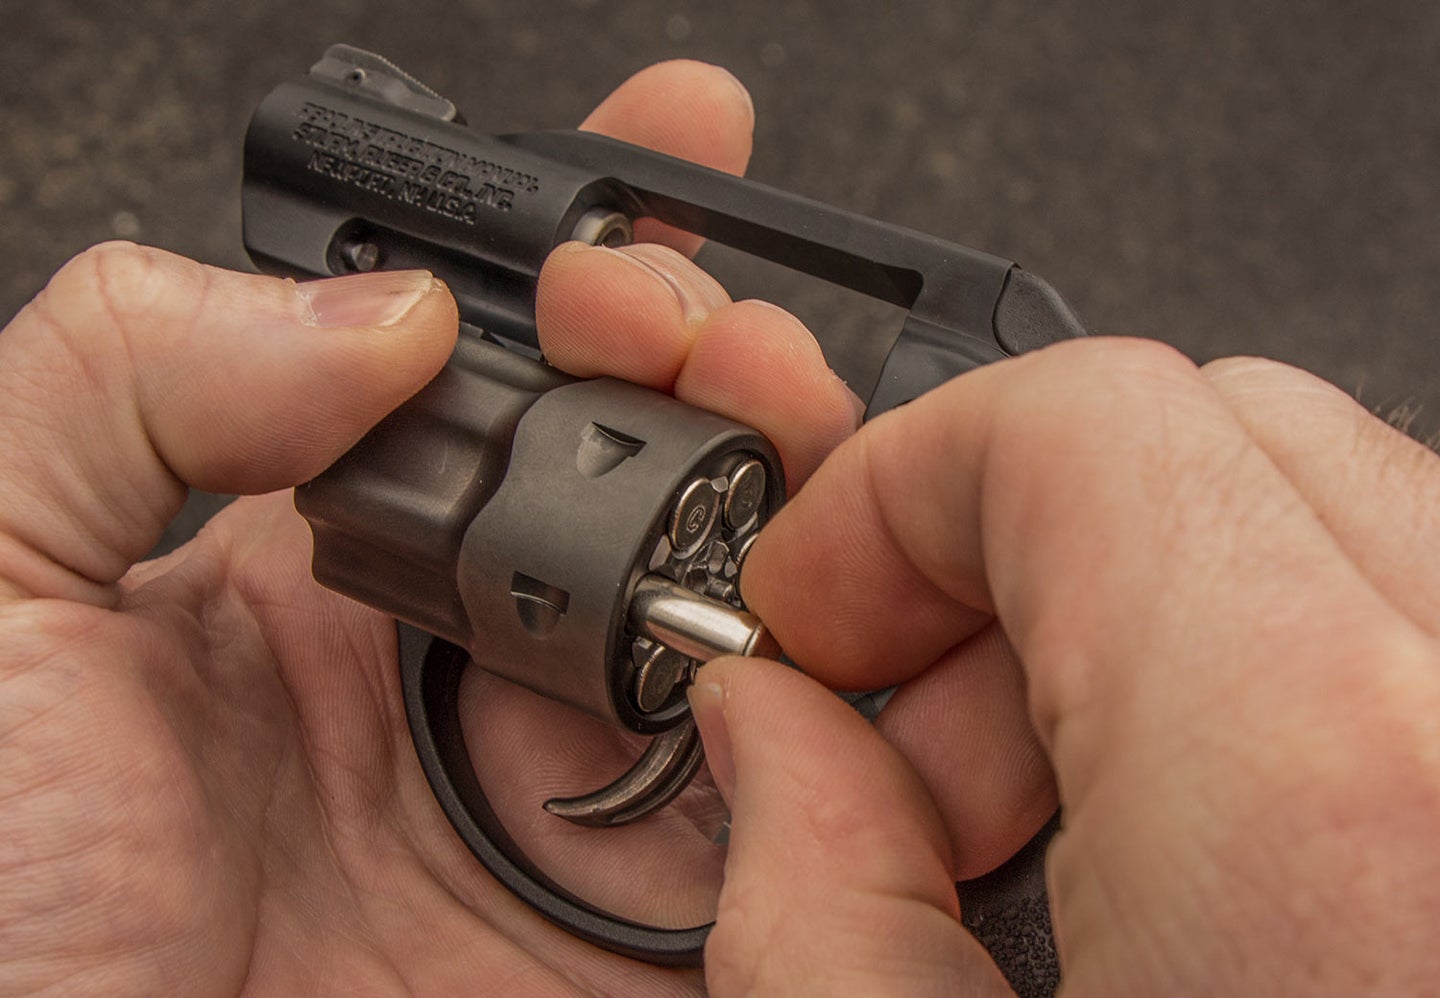 A small 22 magnum handgun